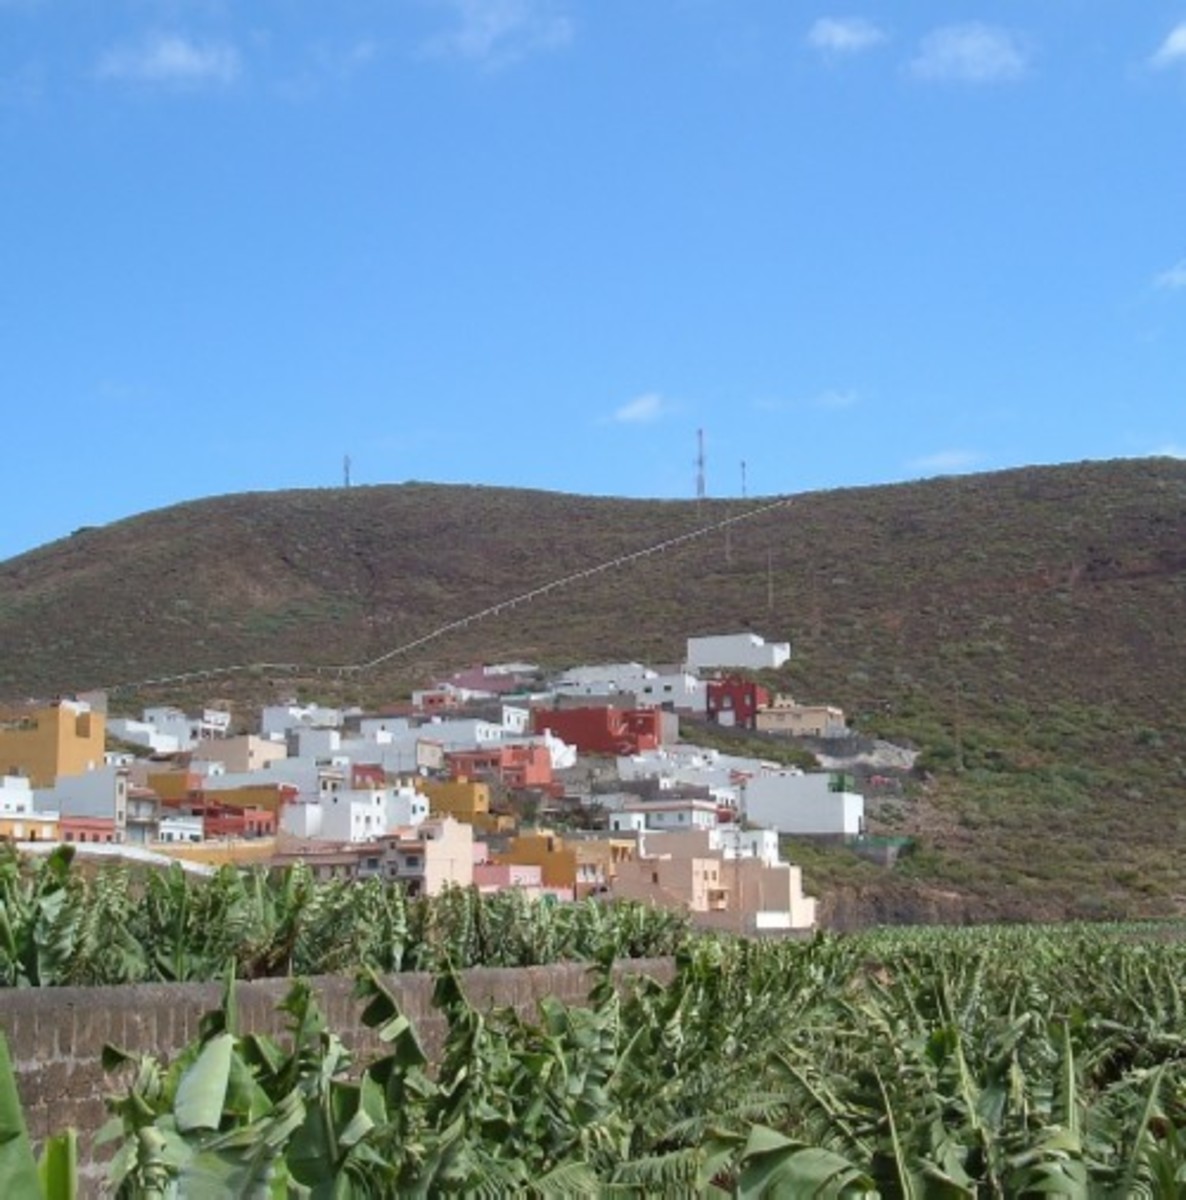 Montaña de Taco where a chupacabra was once reported